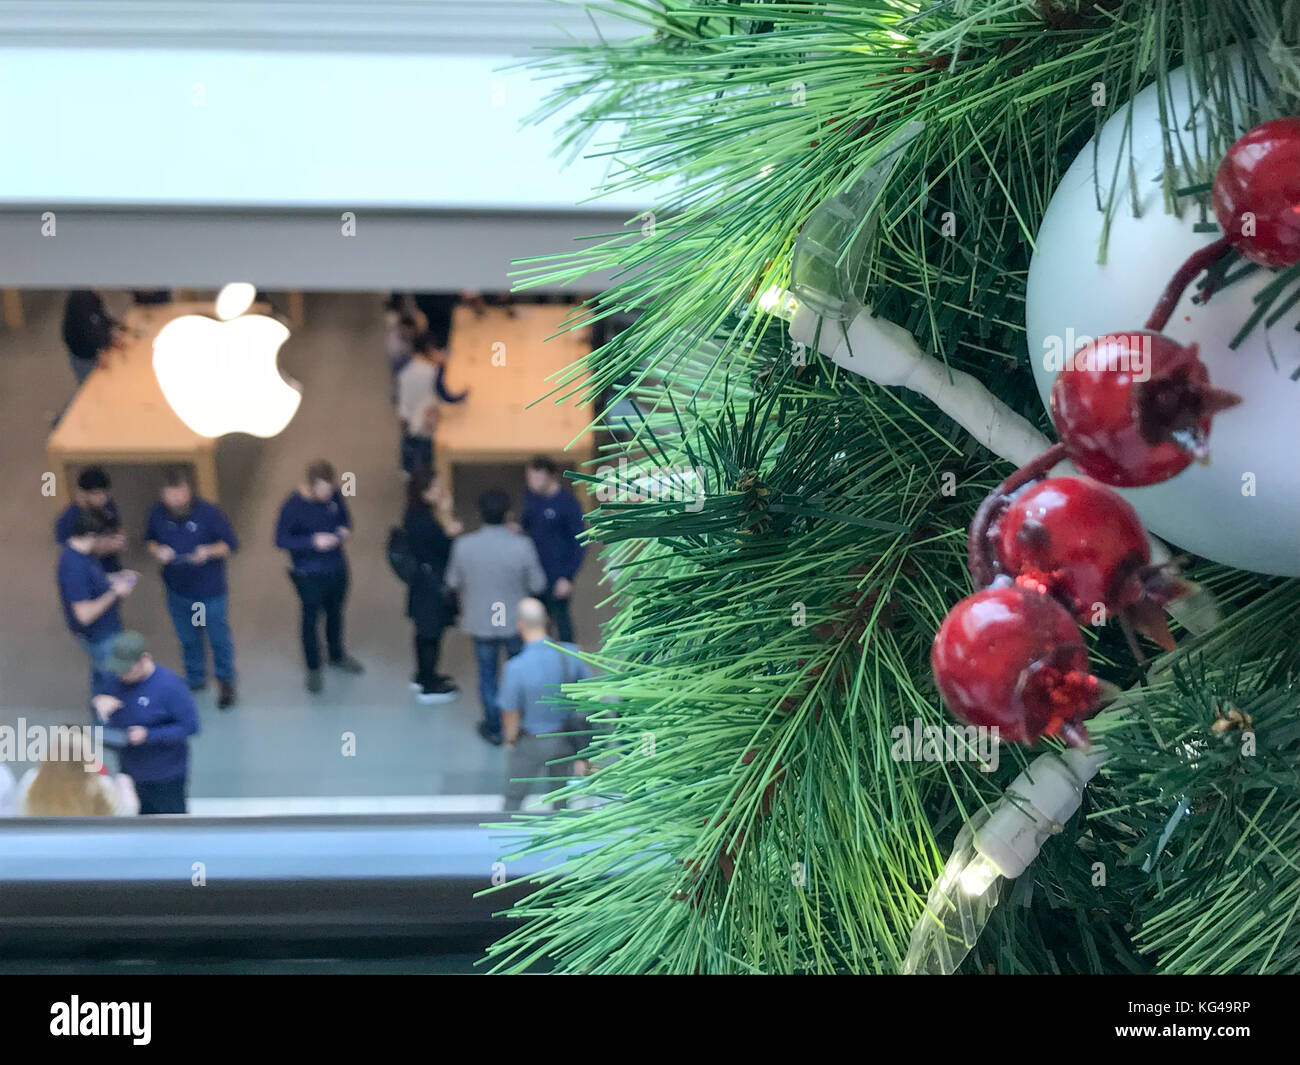 New York, USA. 29Th sep 2017. Les clients Apple attendre dans la ligne pour aller chercher leur pré-commandé l'iPhone Apple X/iPhoneX Mennig Crédit : Don/Alamy Live News Banque D'Images